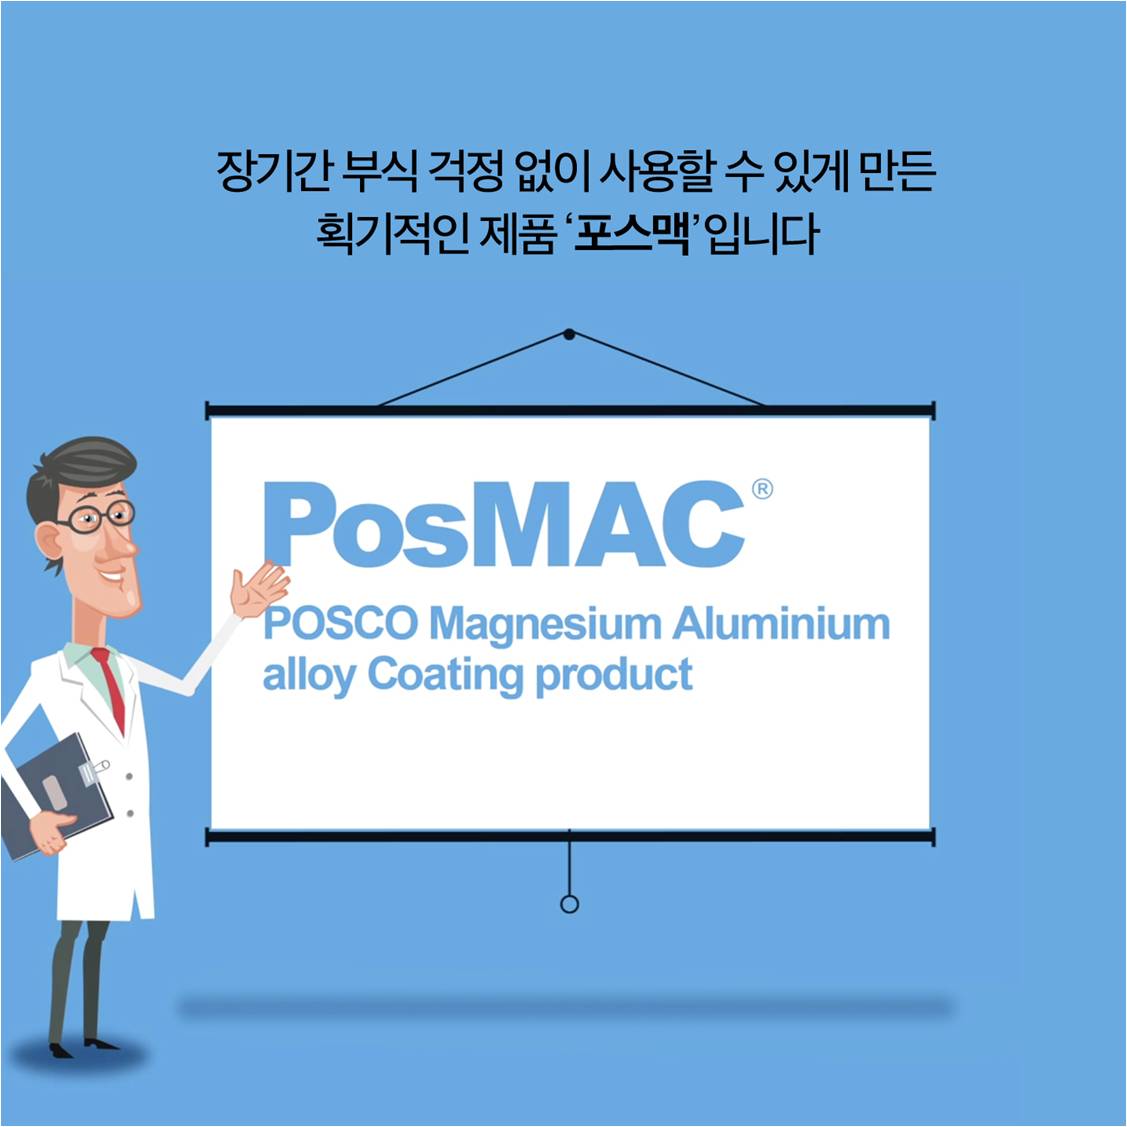 장기간 부식 걱정 없이 사용할 수 있게 만든 획기적인 제품 포스맥입니다. PosMAC POSCO Magnesium Aluminium alloy Coating product